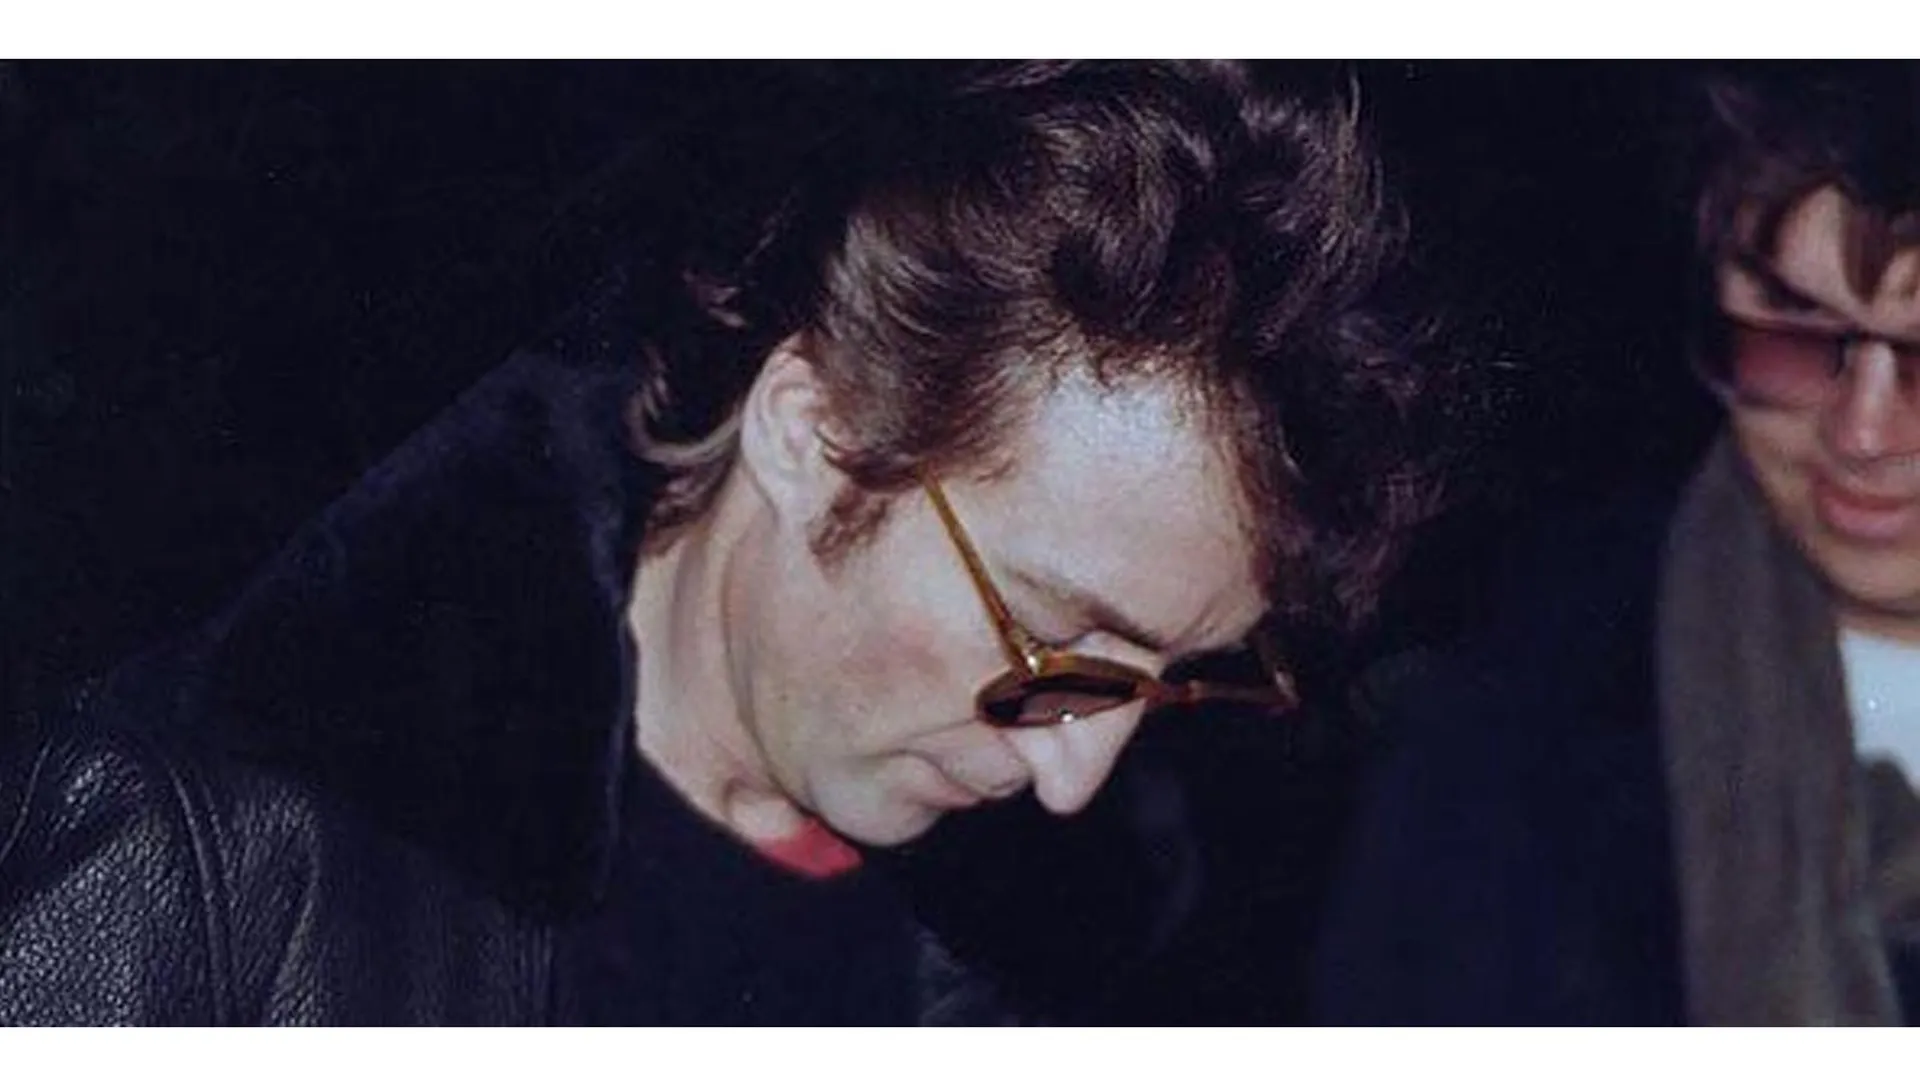 Последнее фото Джона Леннона: он дает автограф своему убийце Марку Чепмену, который тоже попал в кадр, 1980 год